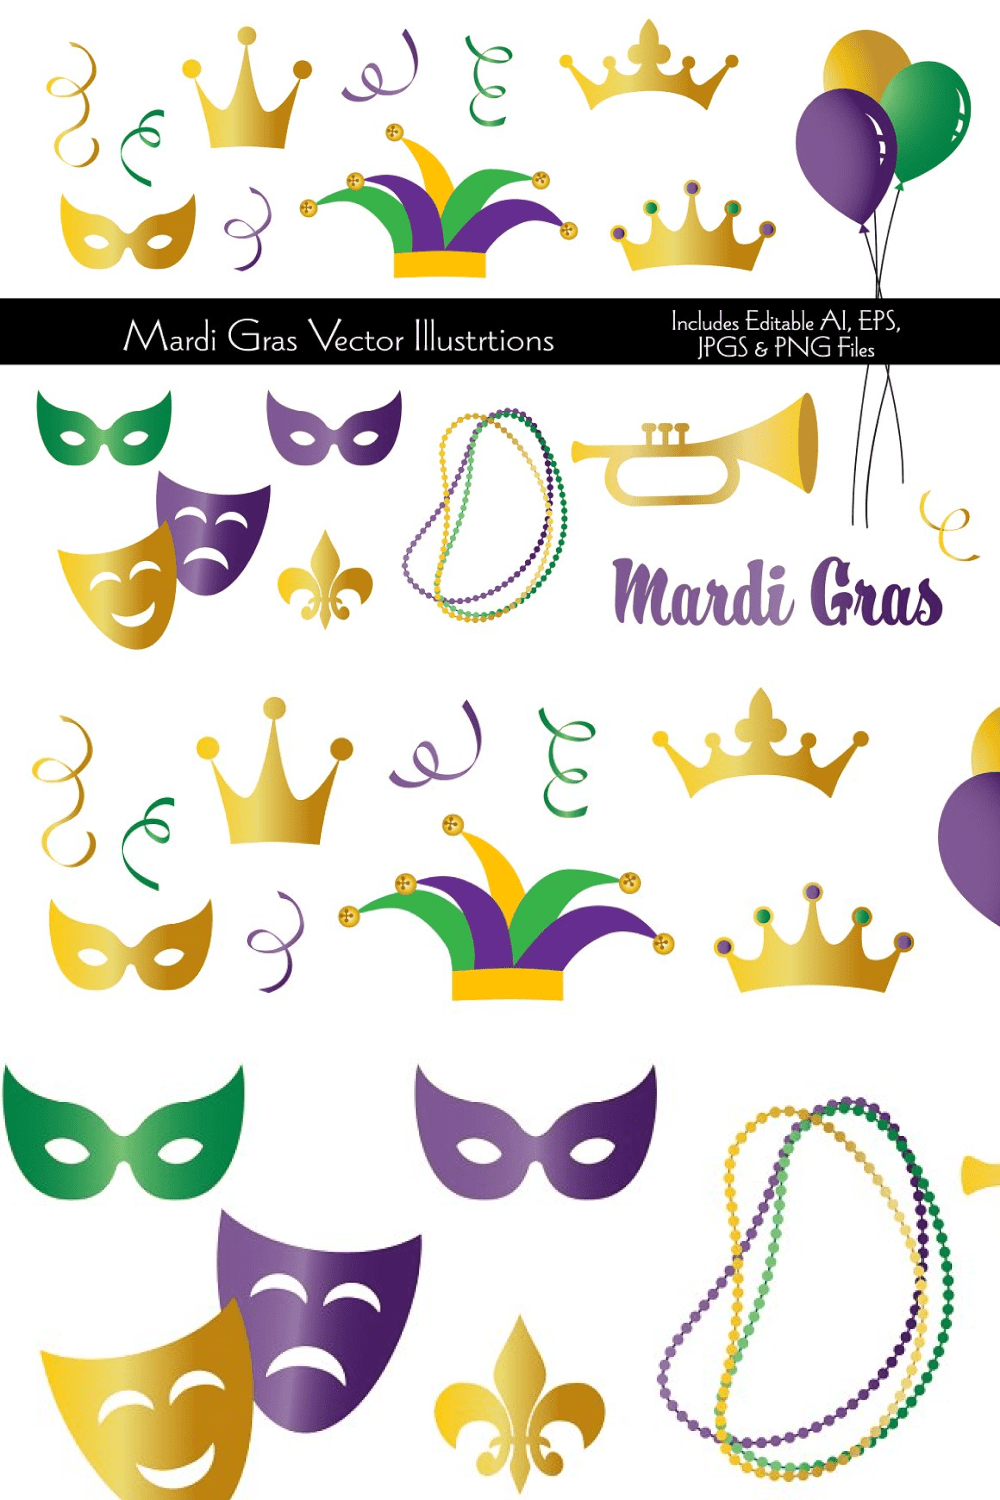 Masks, musical instruments, necklace for Mardi Gras celebration.